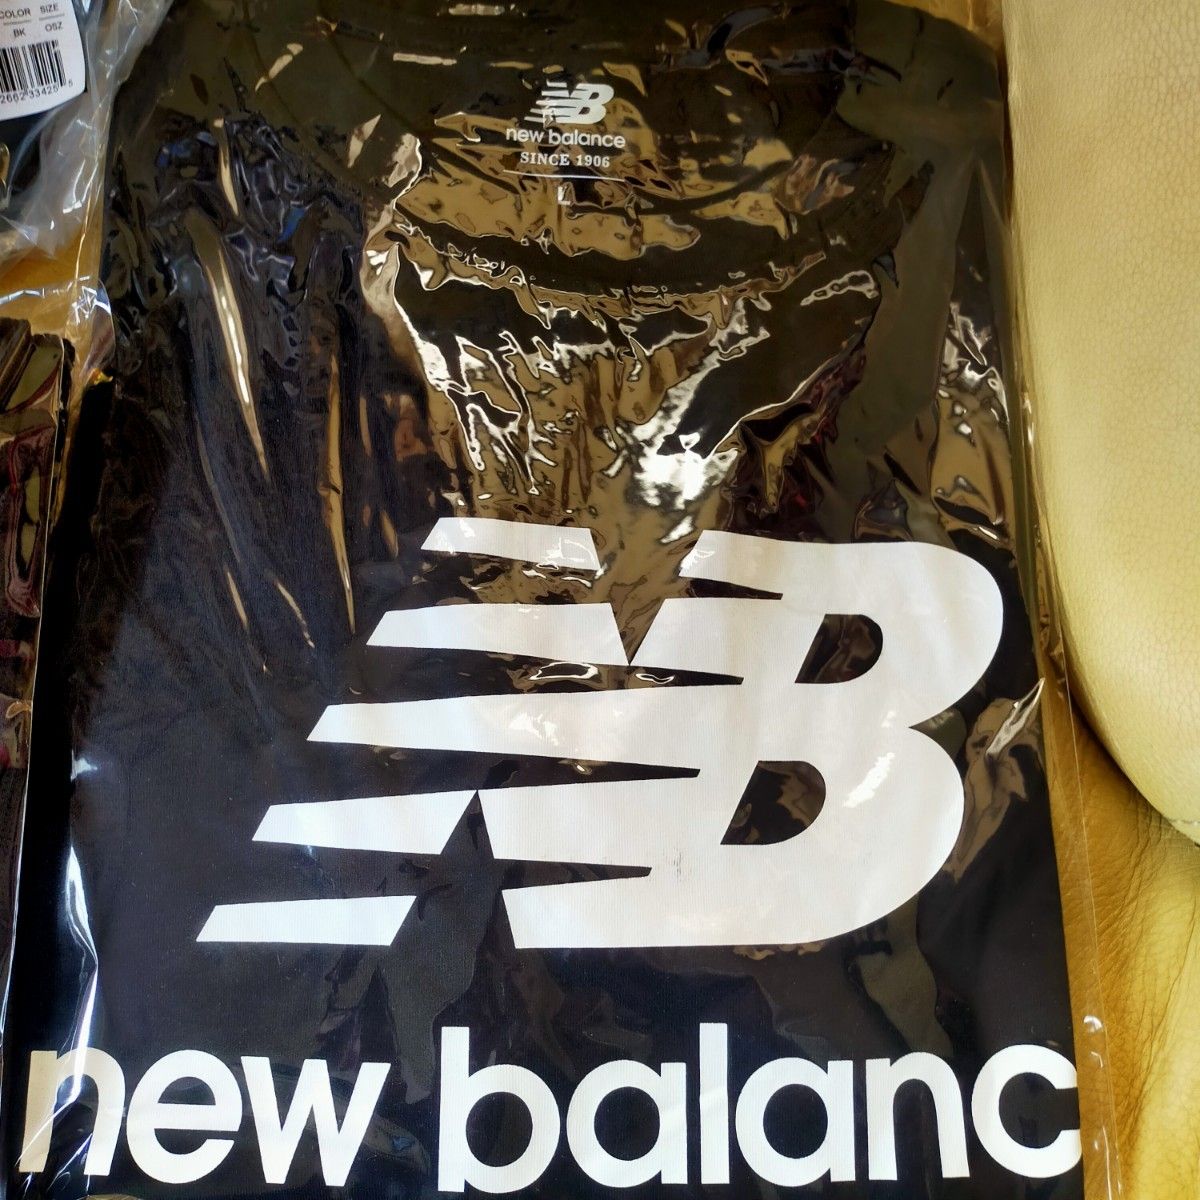 New Balance ニューバランス ドジャース 大谷翔平着用 Tシャツ 短パン キャップ 3点セット